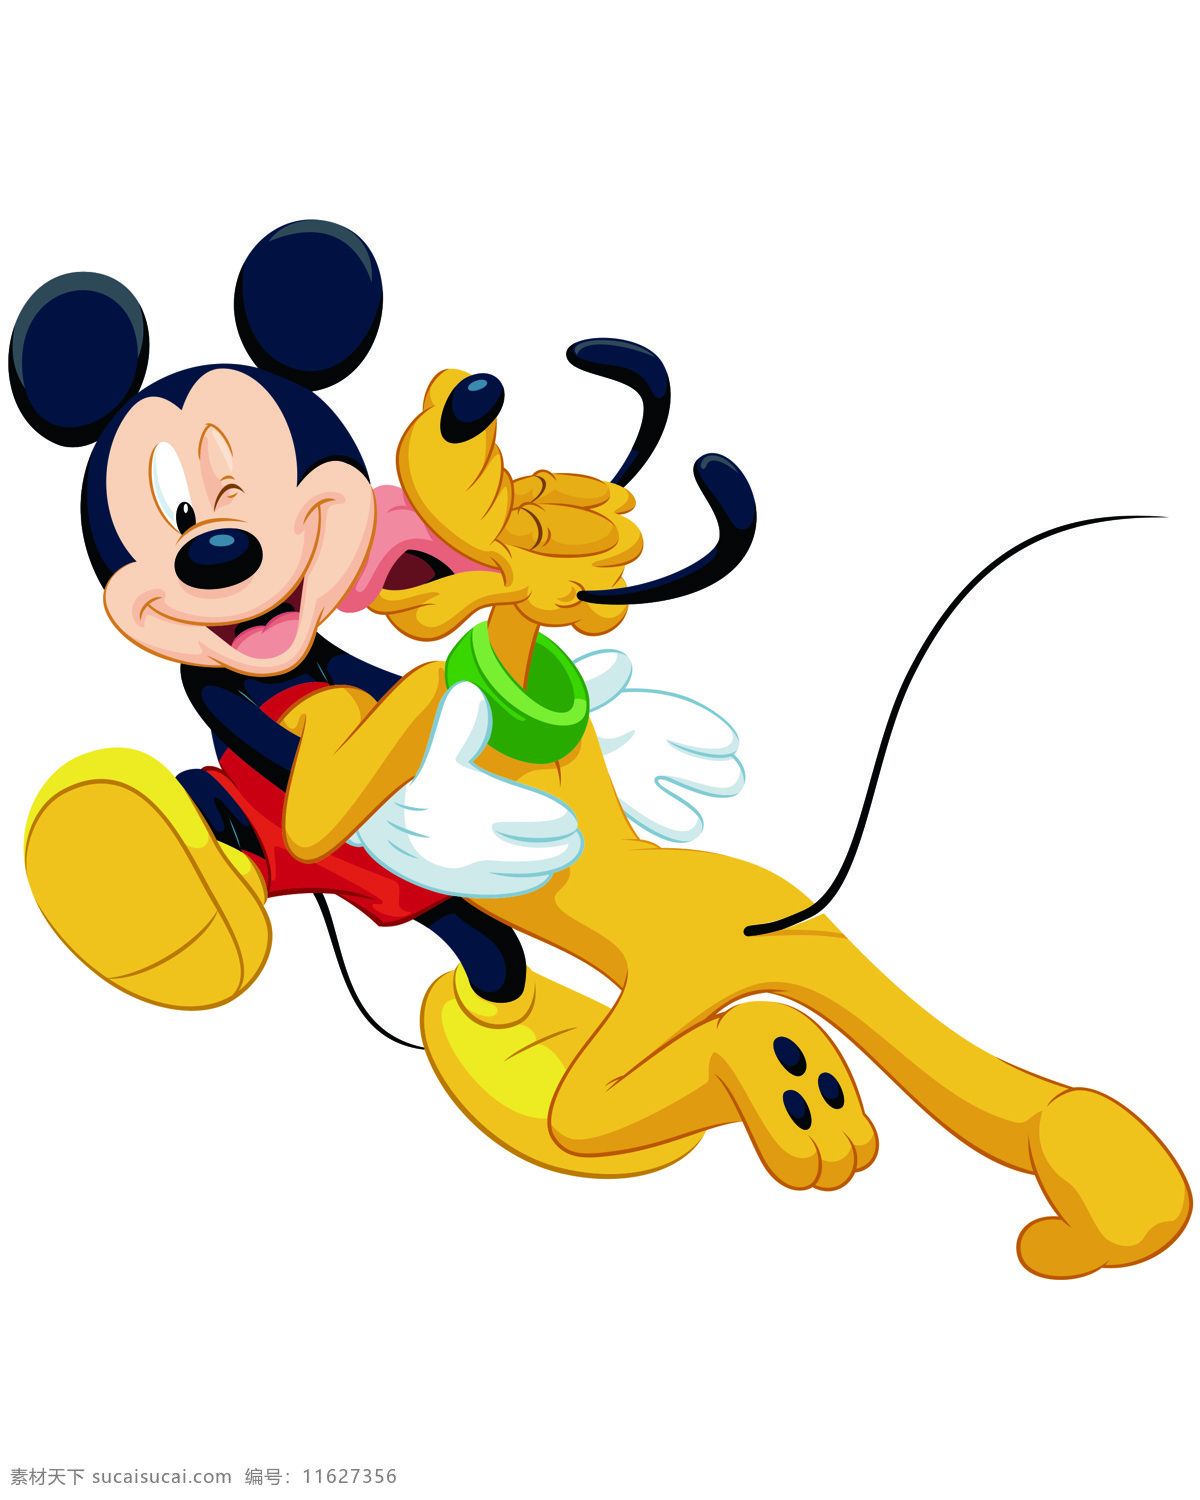 米奇与高飞 米老鼠 迪士尼 卡通 经典卡通 米奇 高飞